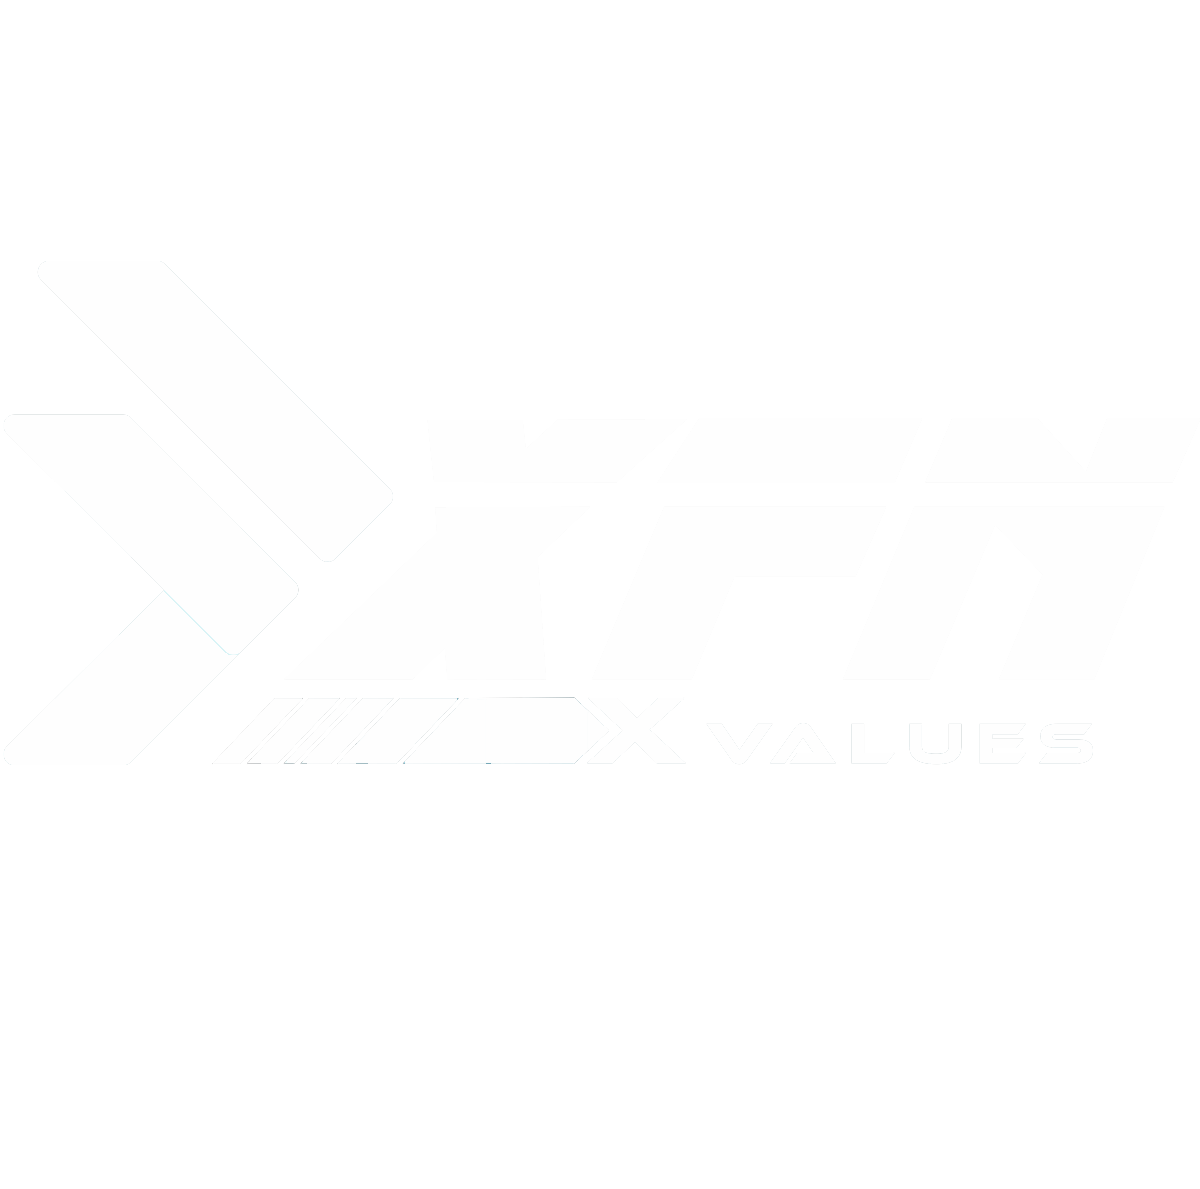 XFN